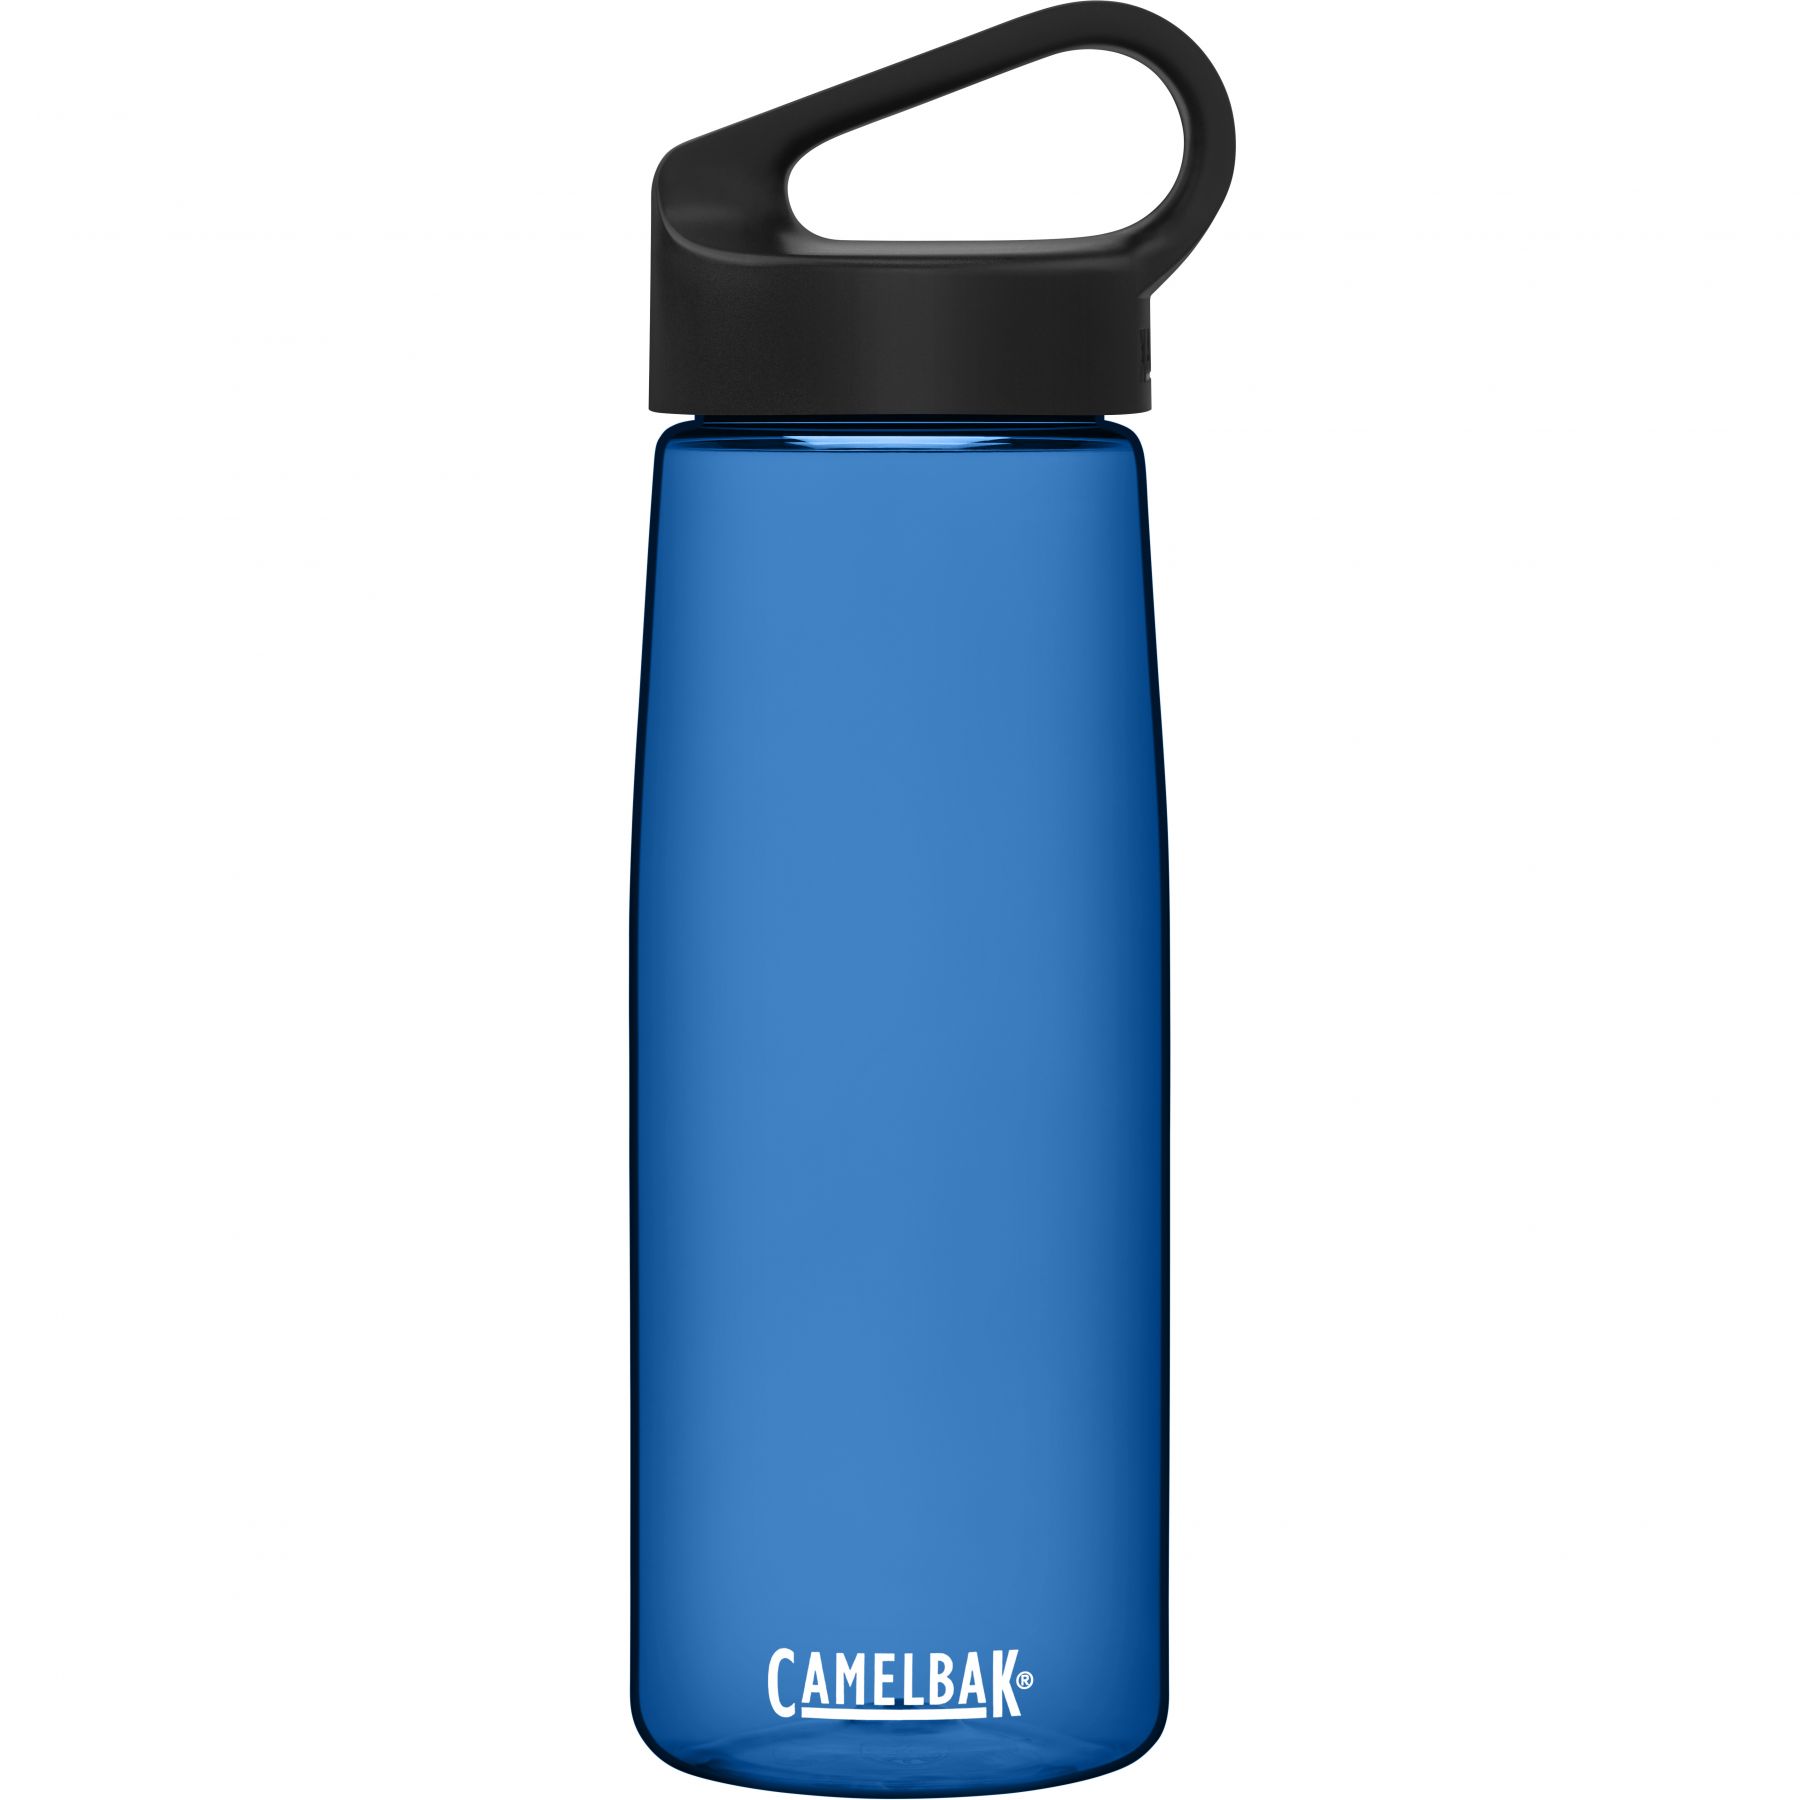 Billede af CamelBak Carry Cap, drikkedunk, 0,75L, blå